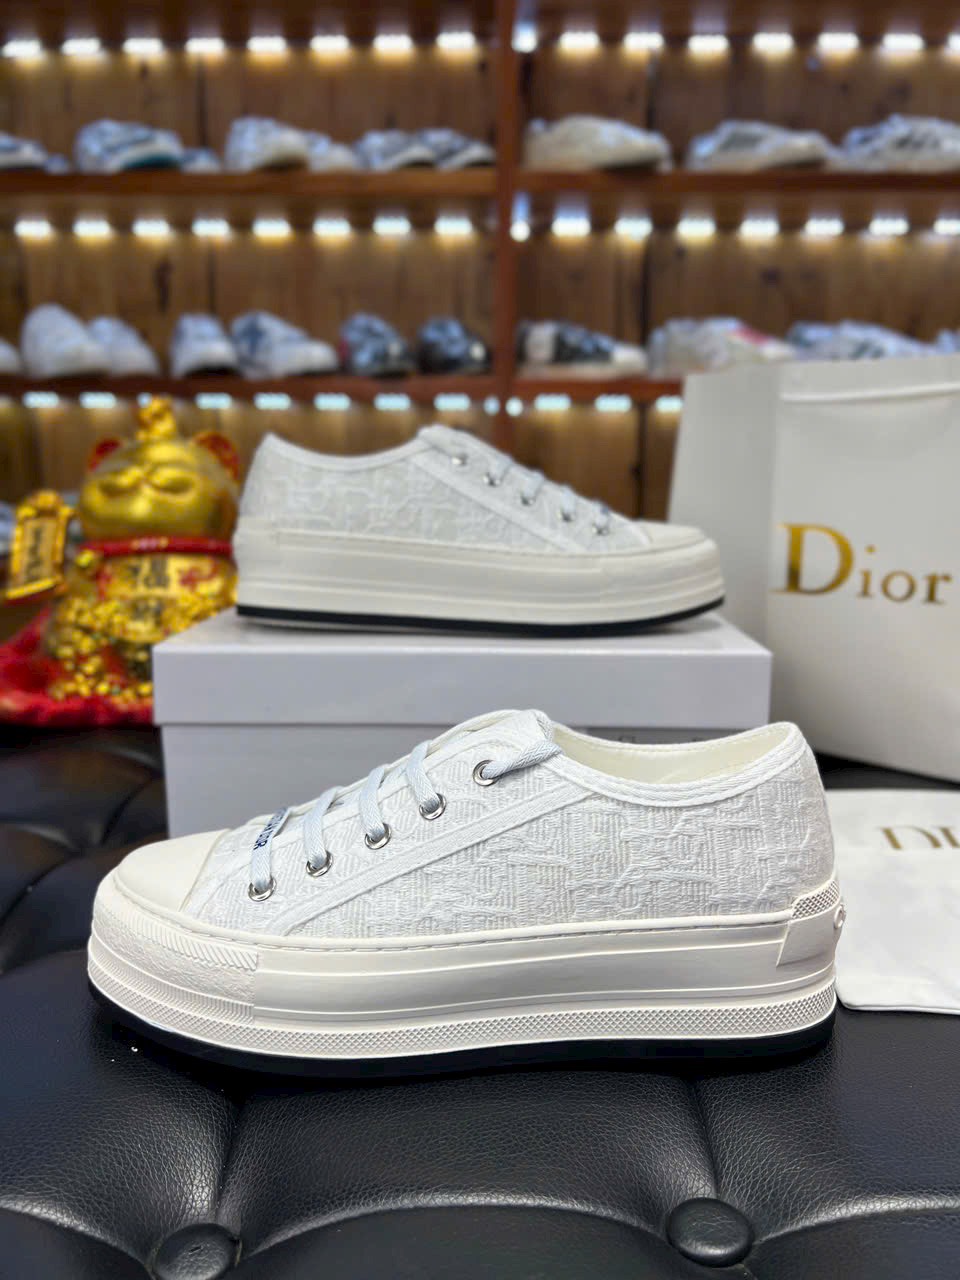 Giày Dior Walk'n' Platform Sneaker White Embroider Cotton Canvas Best Quality